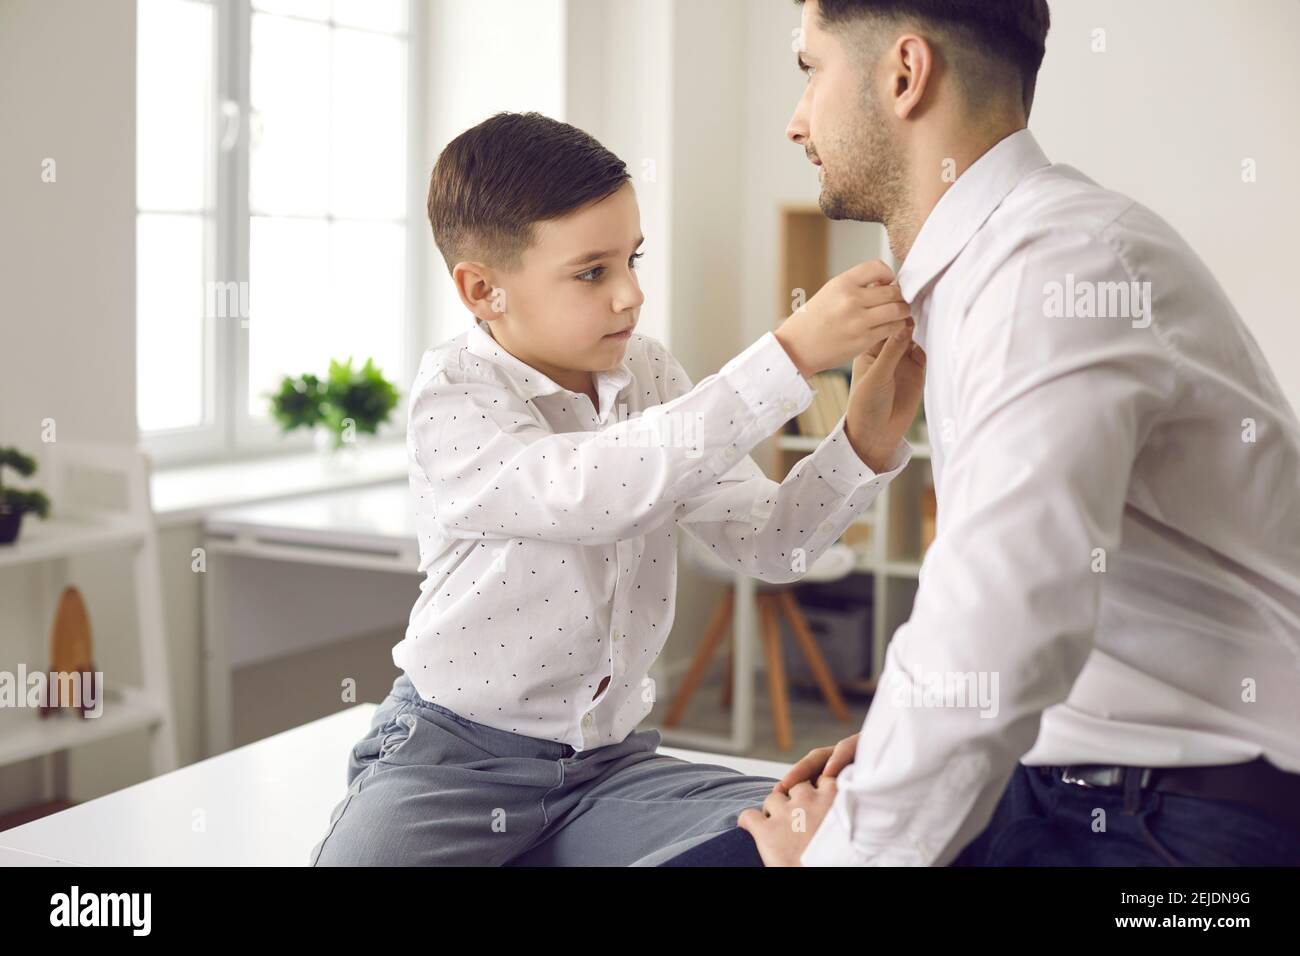 Vater und kleiner Sohn verkleiden sich und ziehen sich weiß an Hemden für besondere familiäre Anlässe Stockfoto